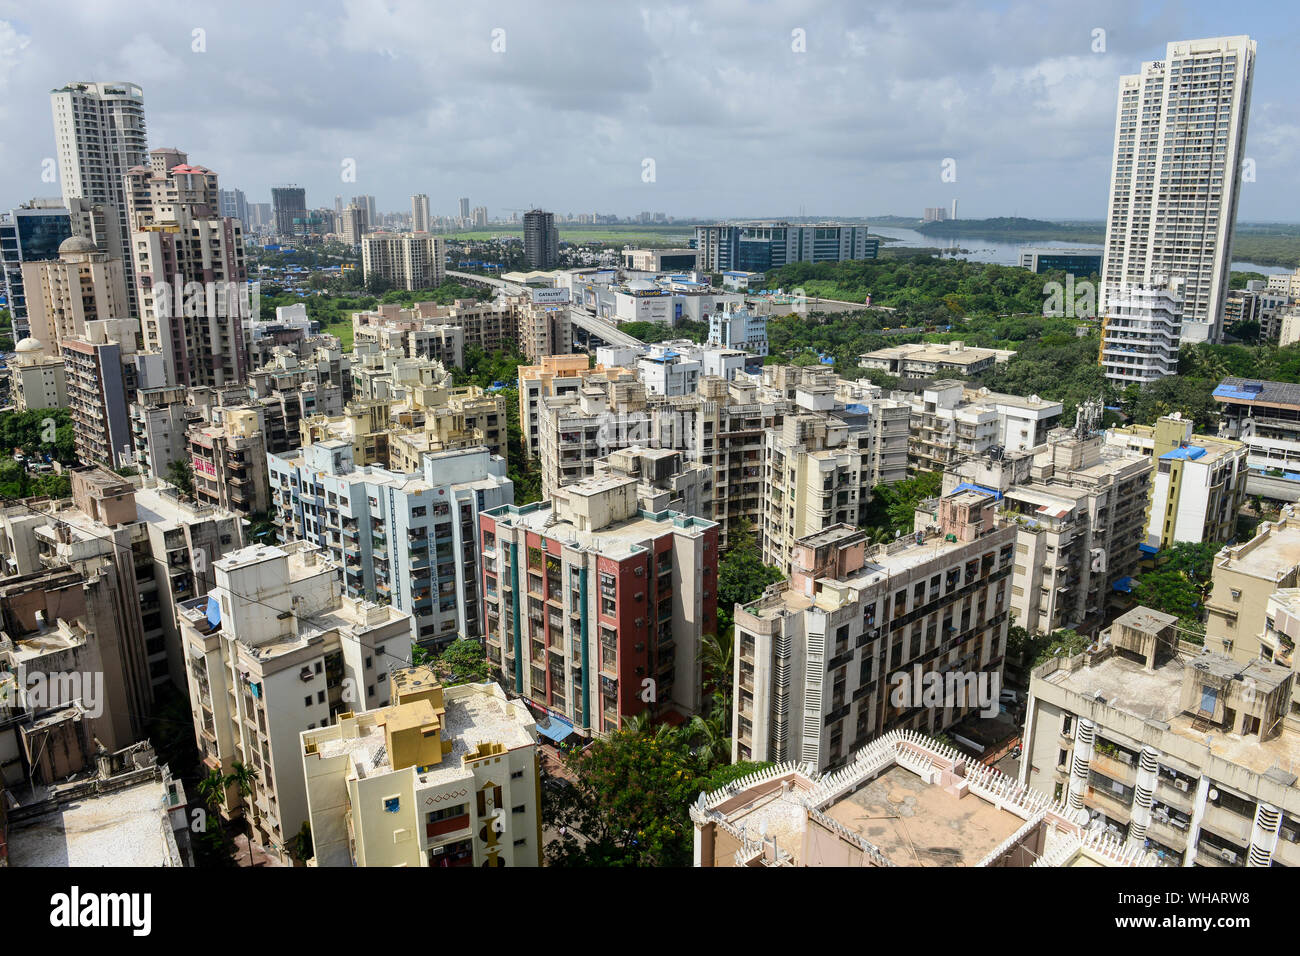 L'Inde, Mumbai, le développement urbain, gratte-ciel avec des appartements coûteux en suburb Goregoan Inorbit mall, et les immeubles de bureaux et de BPO callcenter Banque D'Images